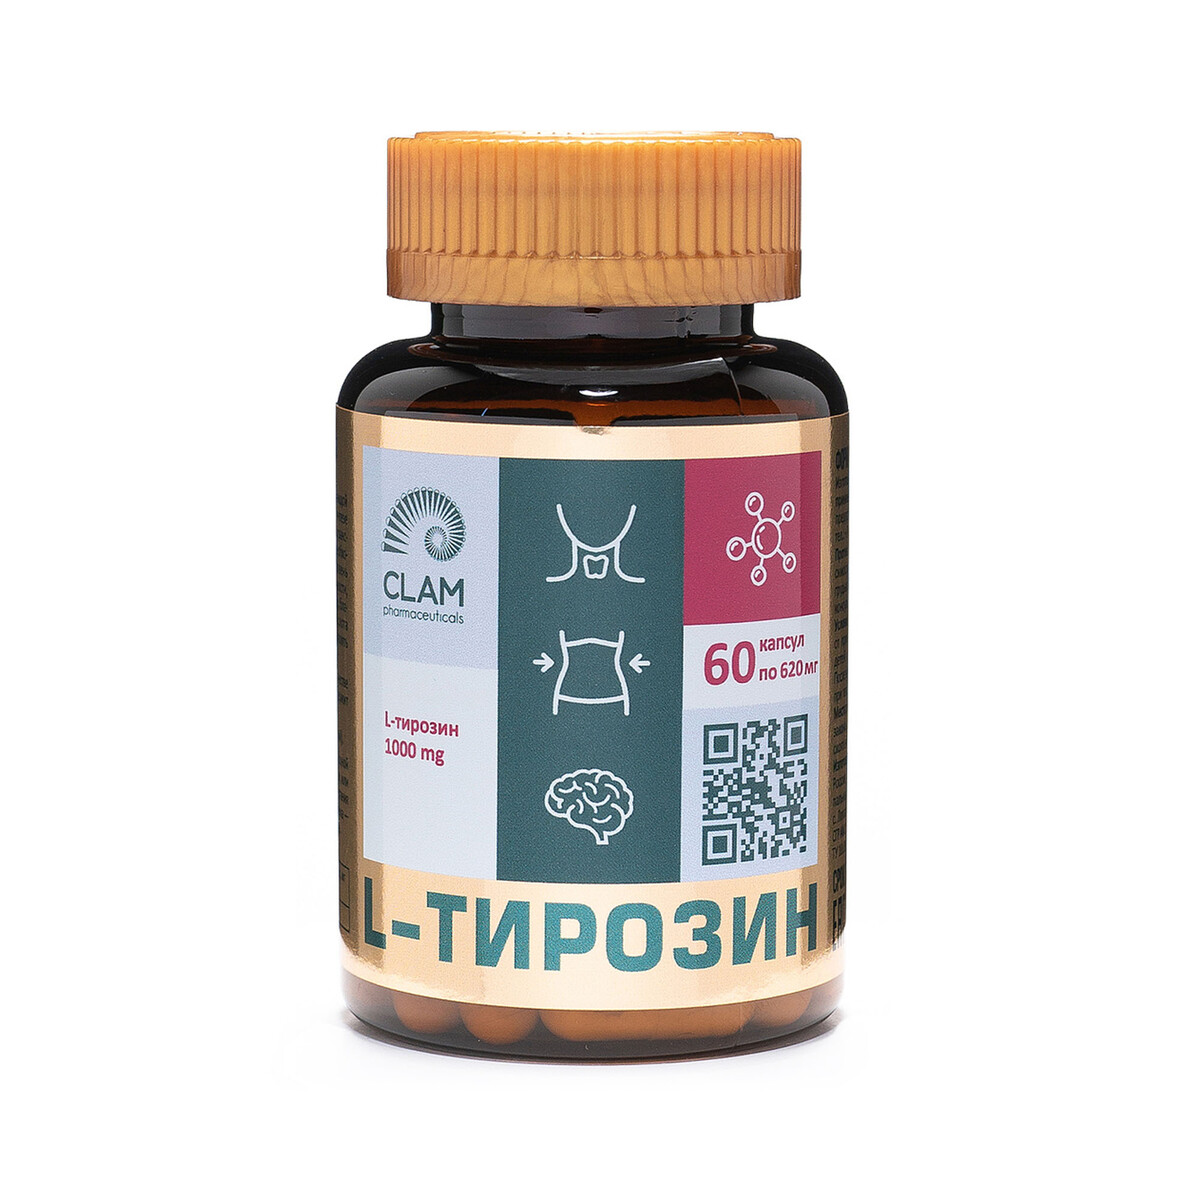 L-тирозин - защита от стресса - для снижения стресса и контроля аппетита - 60 капсул ревматоидный артрит эффективная система питания позволяющая снизить интенсивность ревматических заболеваний